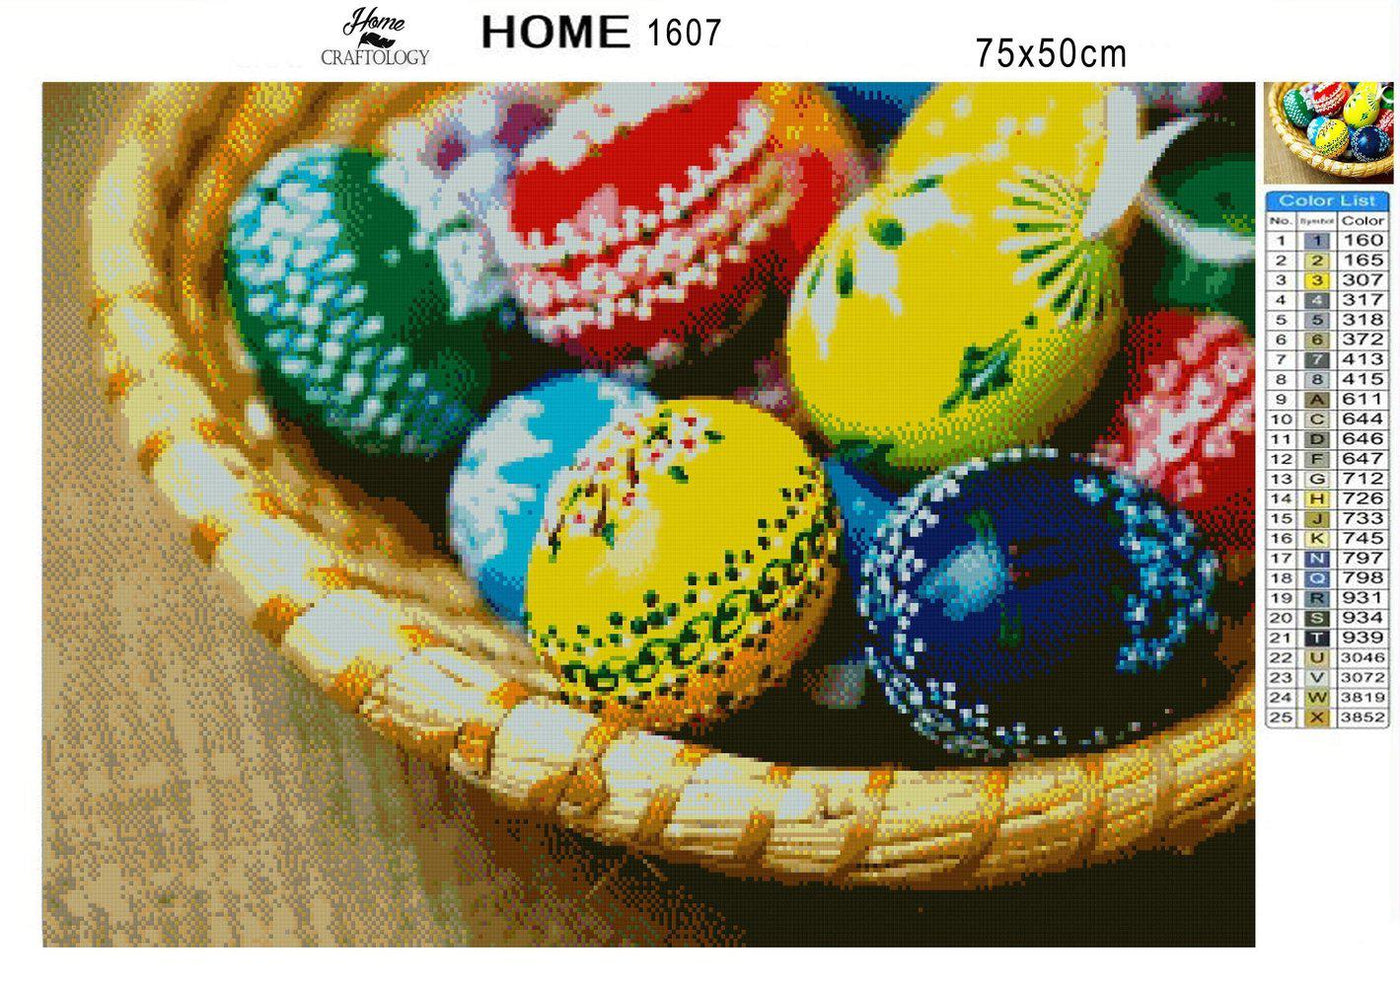 Painted Easter Eggs - Premium Diamond Painting Kit